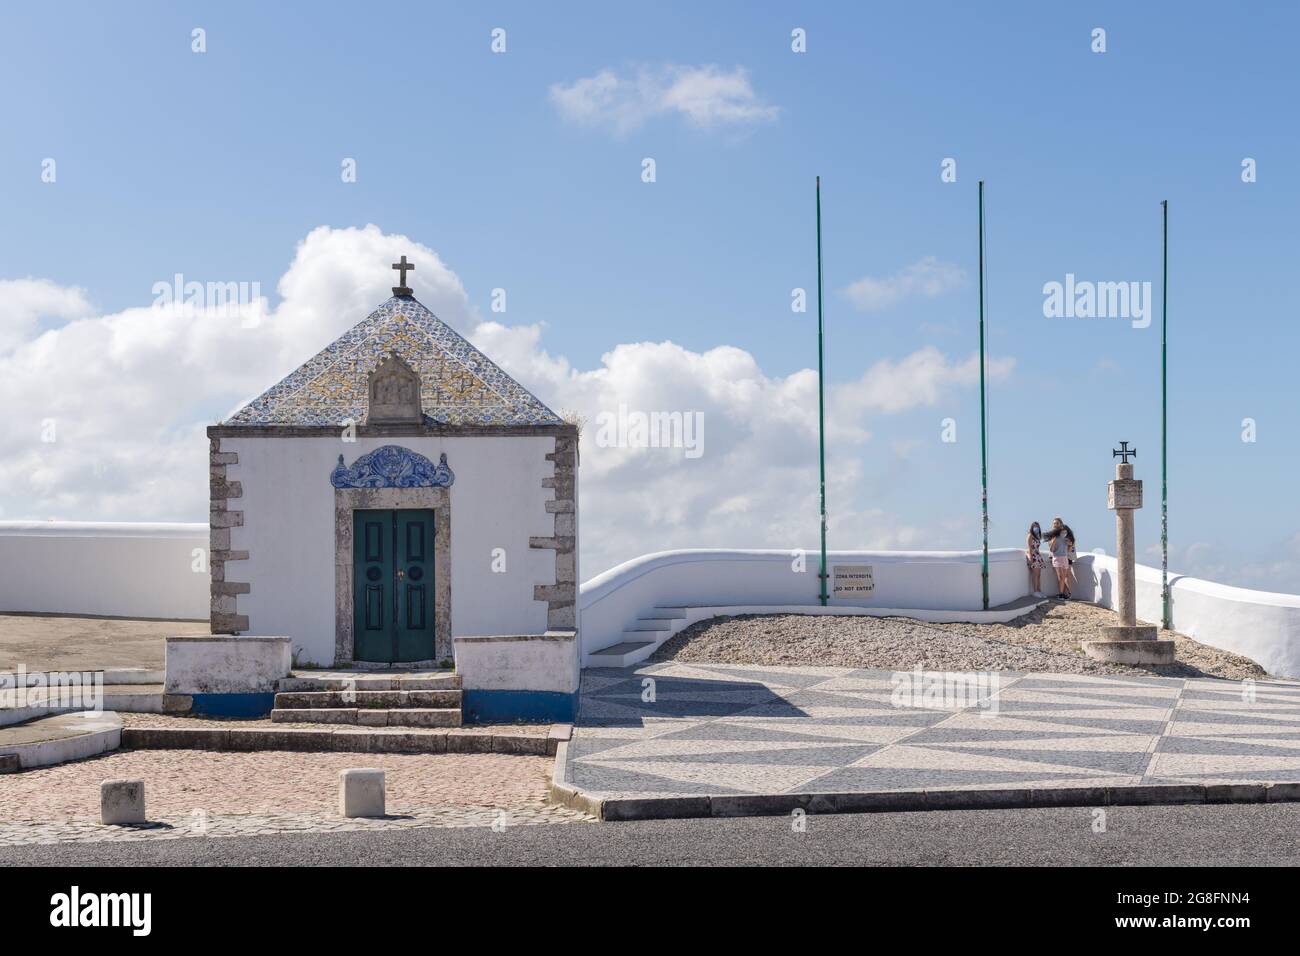 Nazare, Portugal - June 28, 2021: View of the Ermida da Memoria, the Memory Hermitage chapel in Nazare Sitio Stock Photo